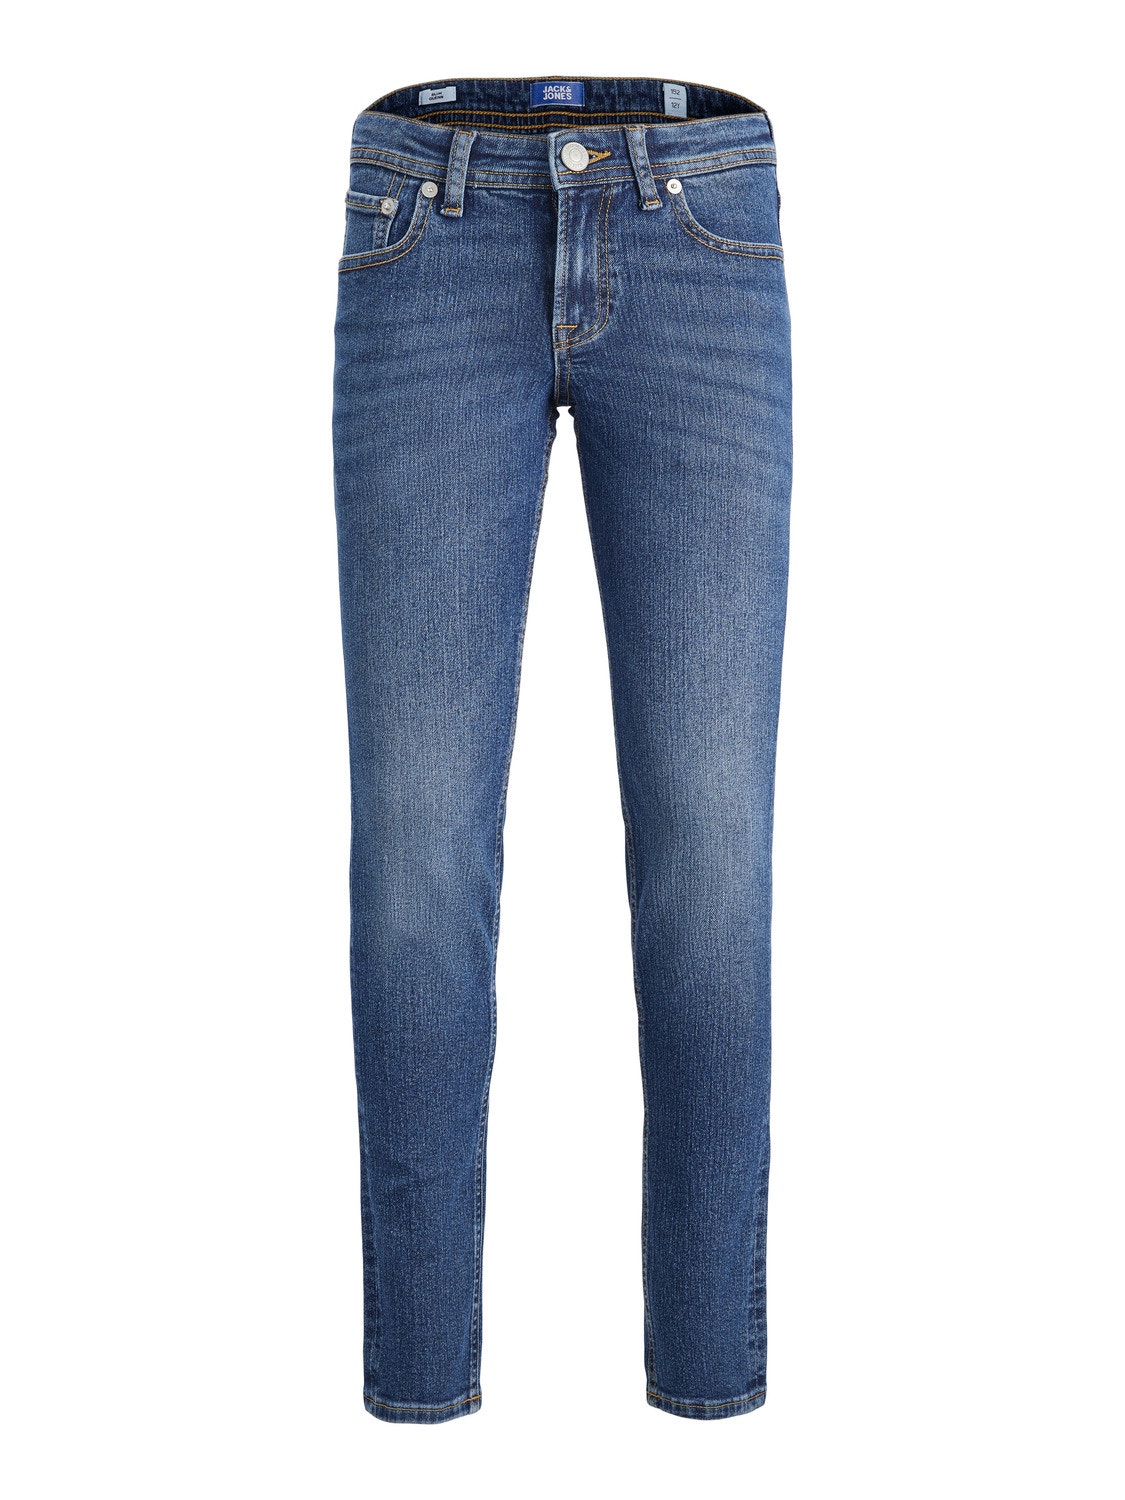 Jack & Jones JJIGLENN JJORIGINAL MF 070 Slim Fit Jeans Für jungs -Blue Denim - 12237499